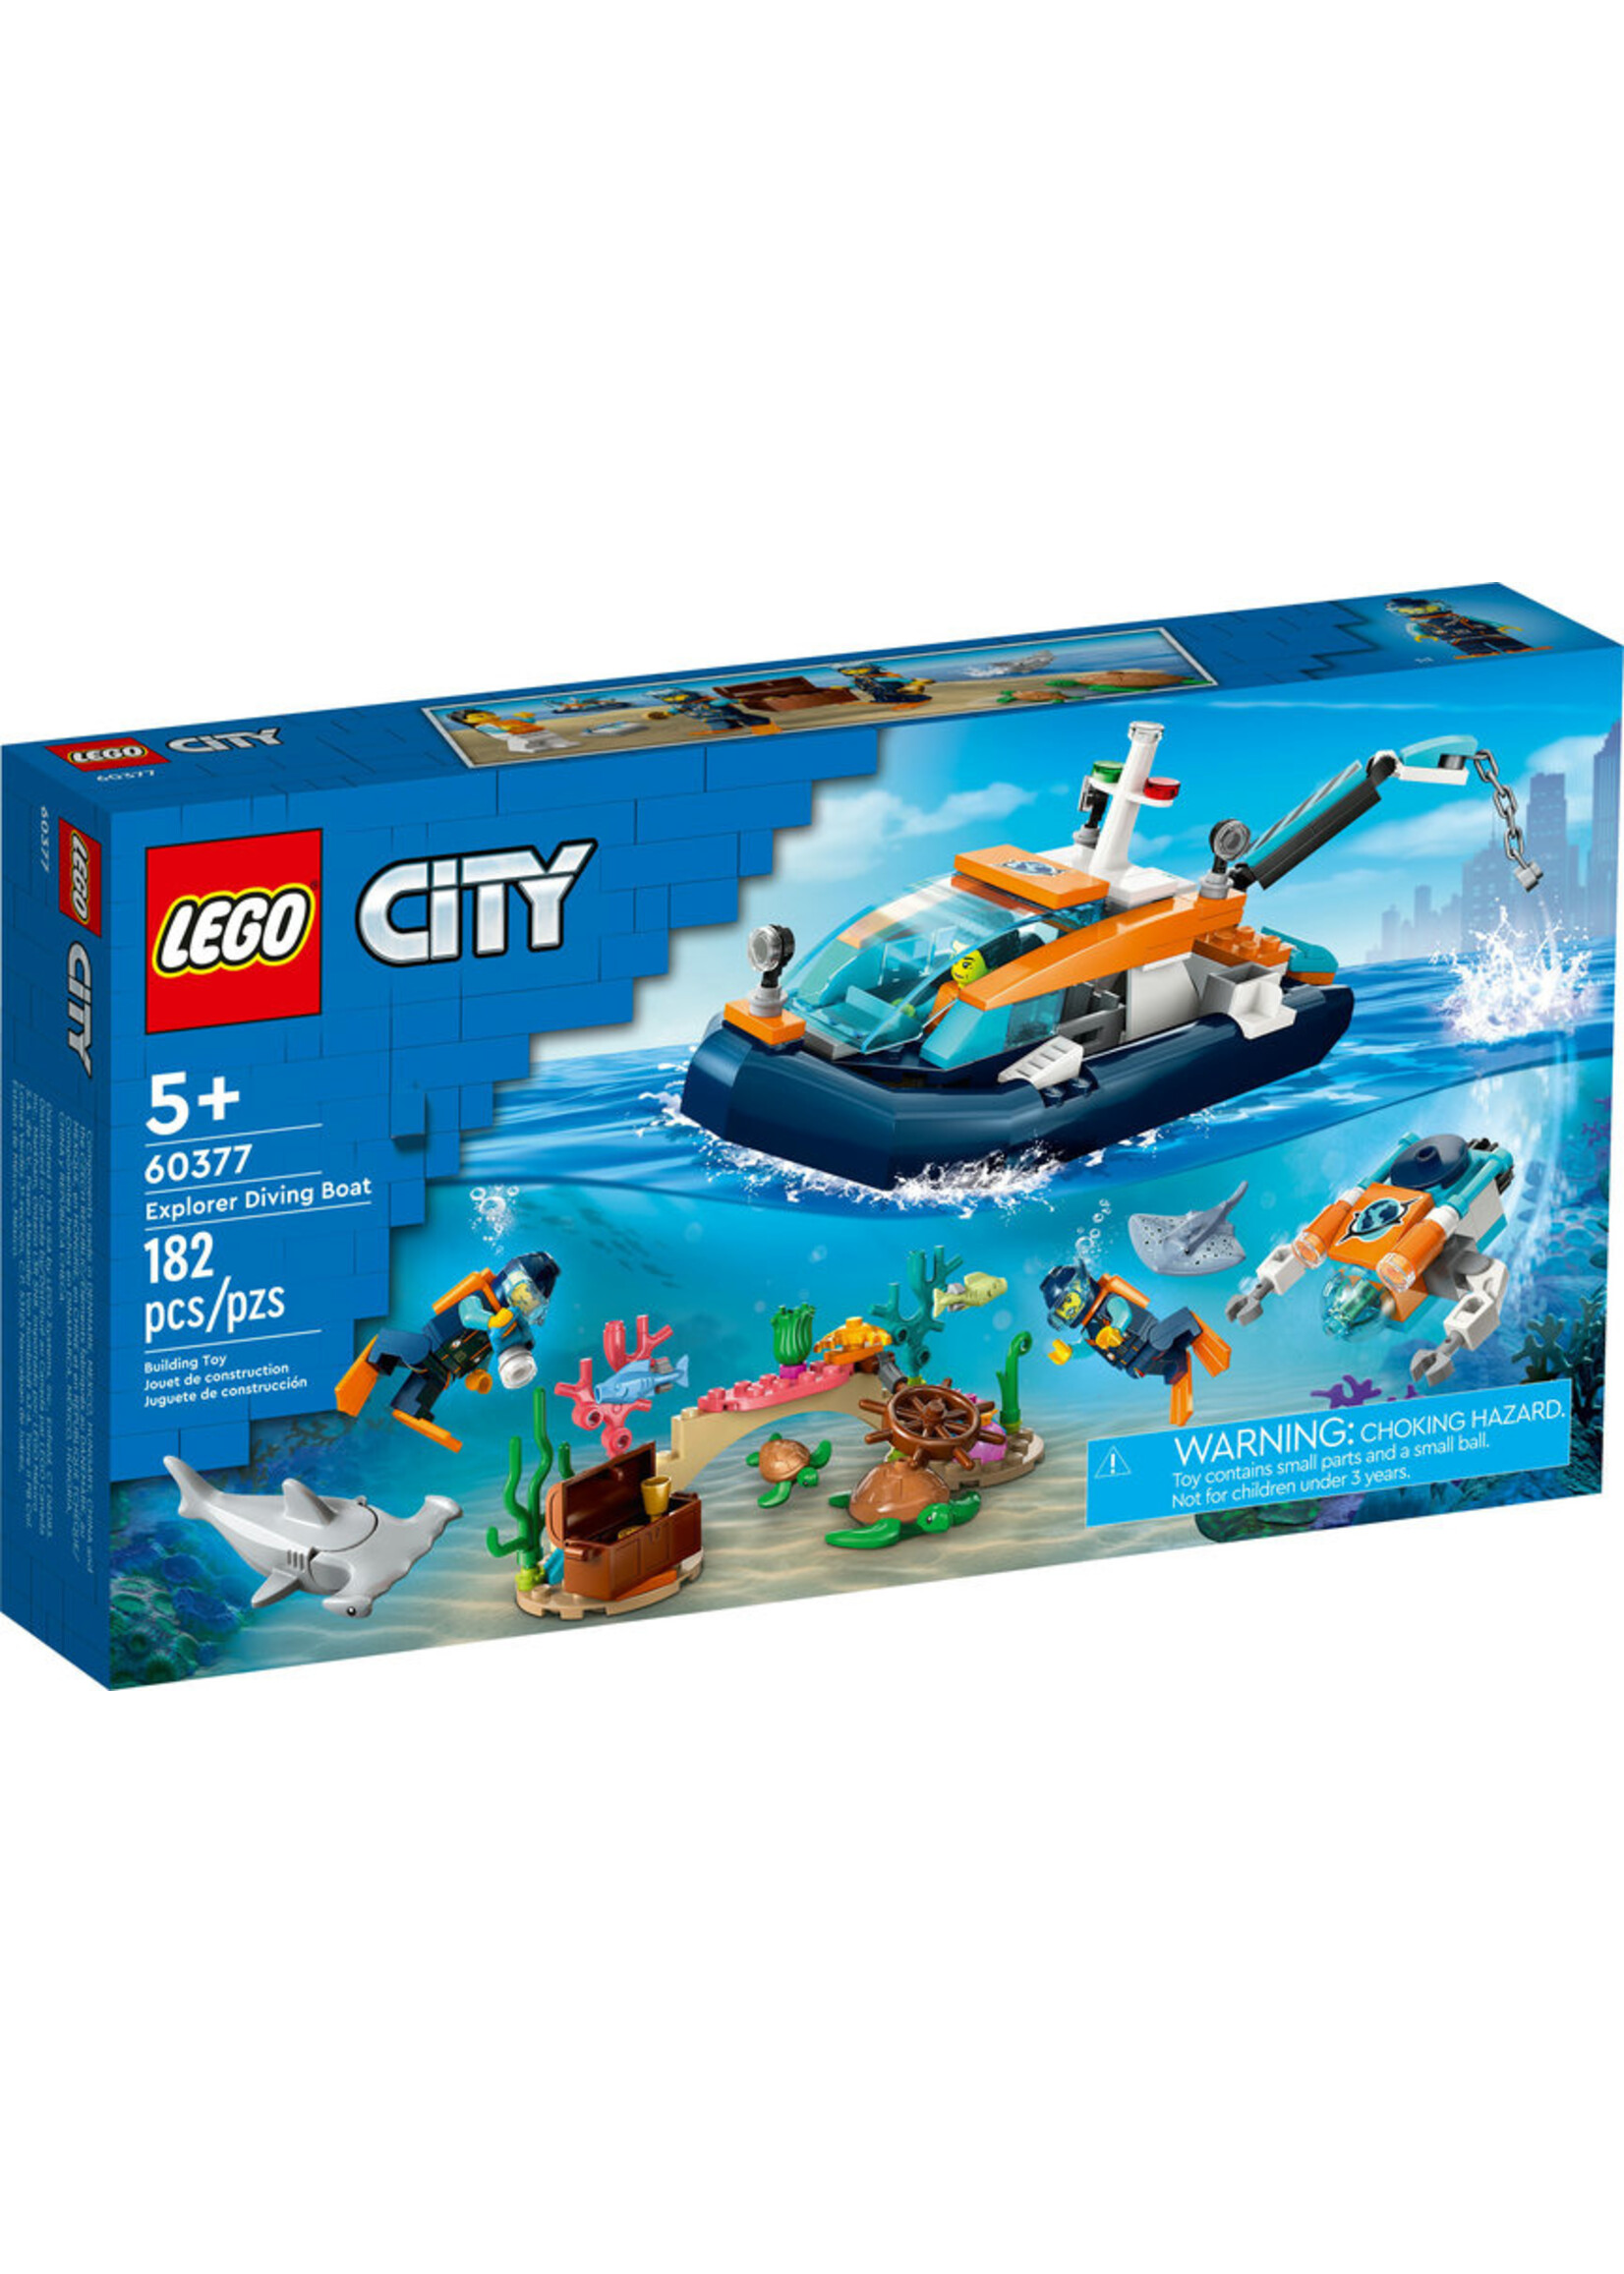 LEGO 60377 - Explorer Diving Boat